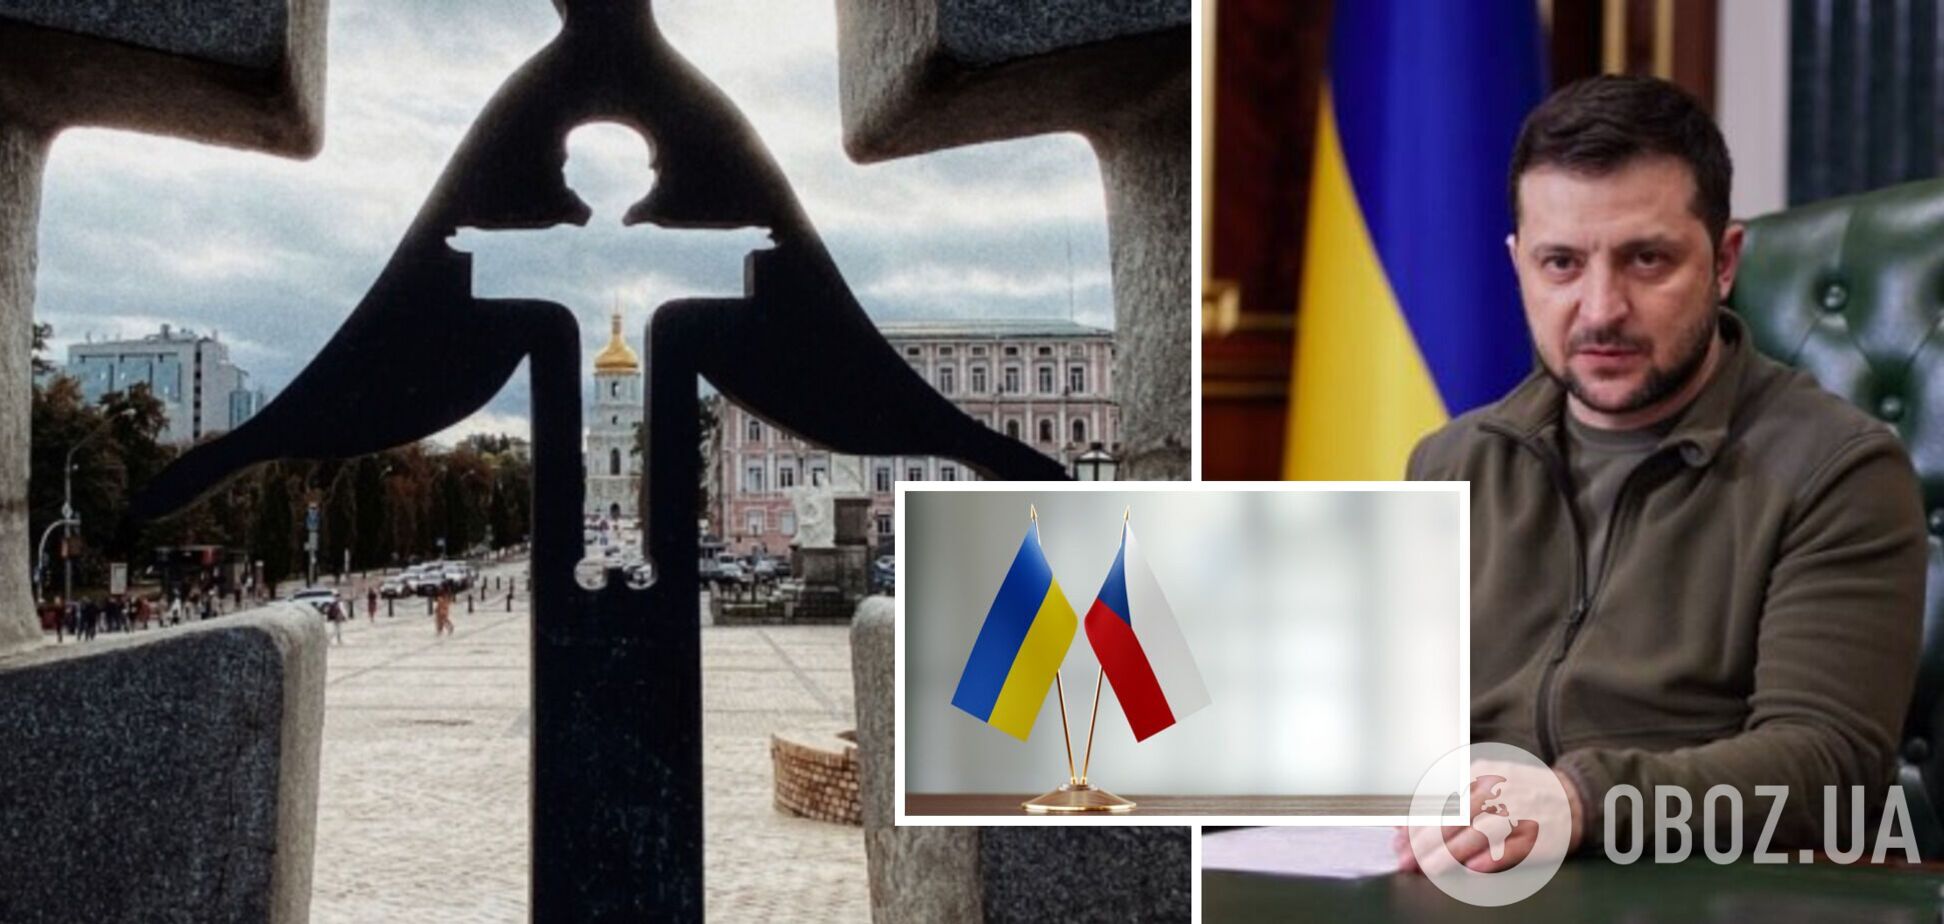 Сенат Чехии признал Голодомор геноцидом украинского народа, — Зеленский